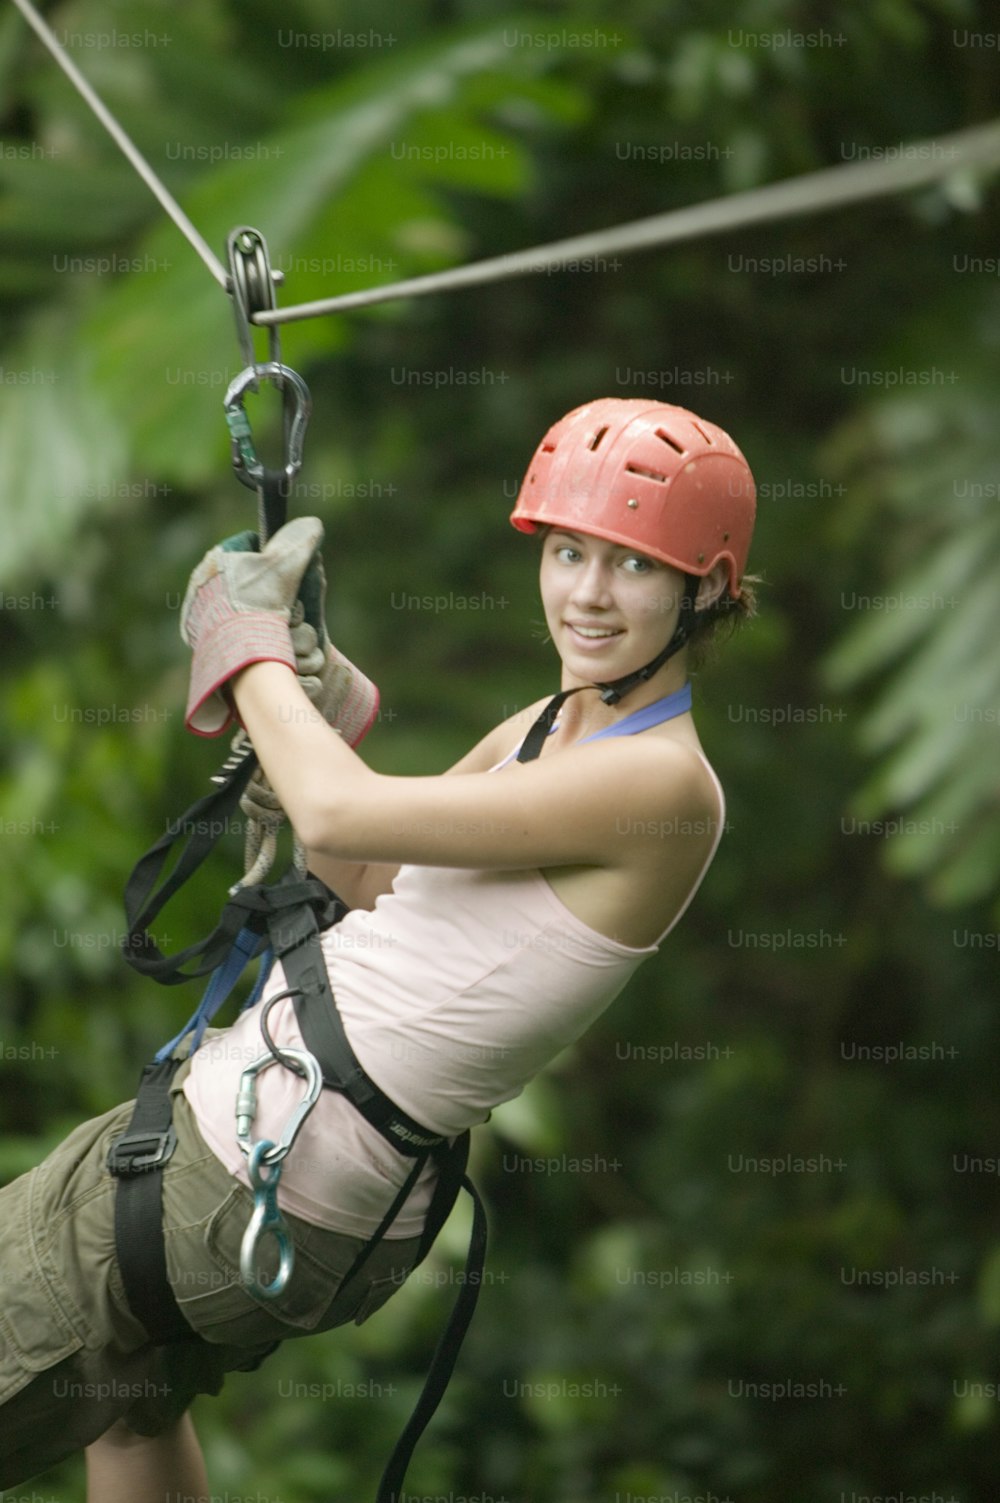 ヘルメットをかぶった女性がジャングルを駆け抜けている